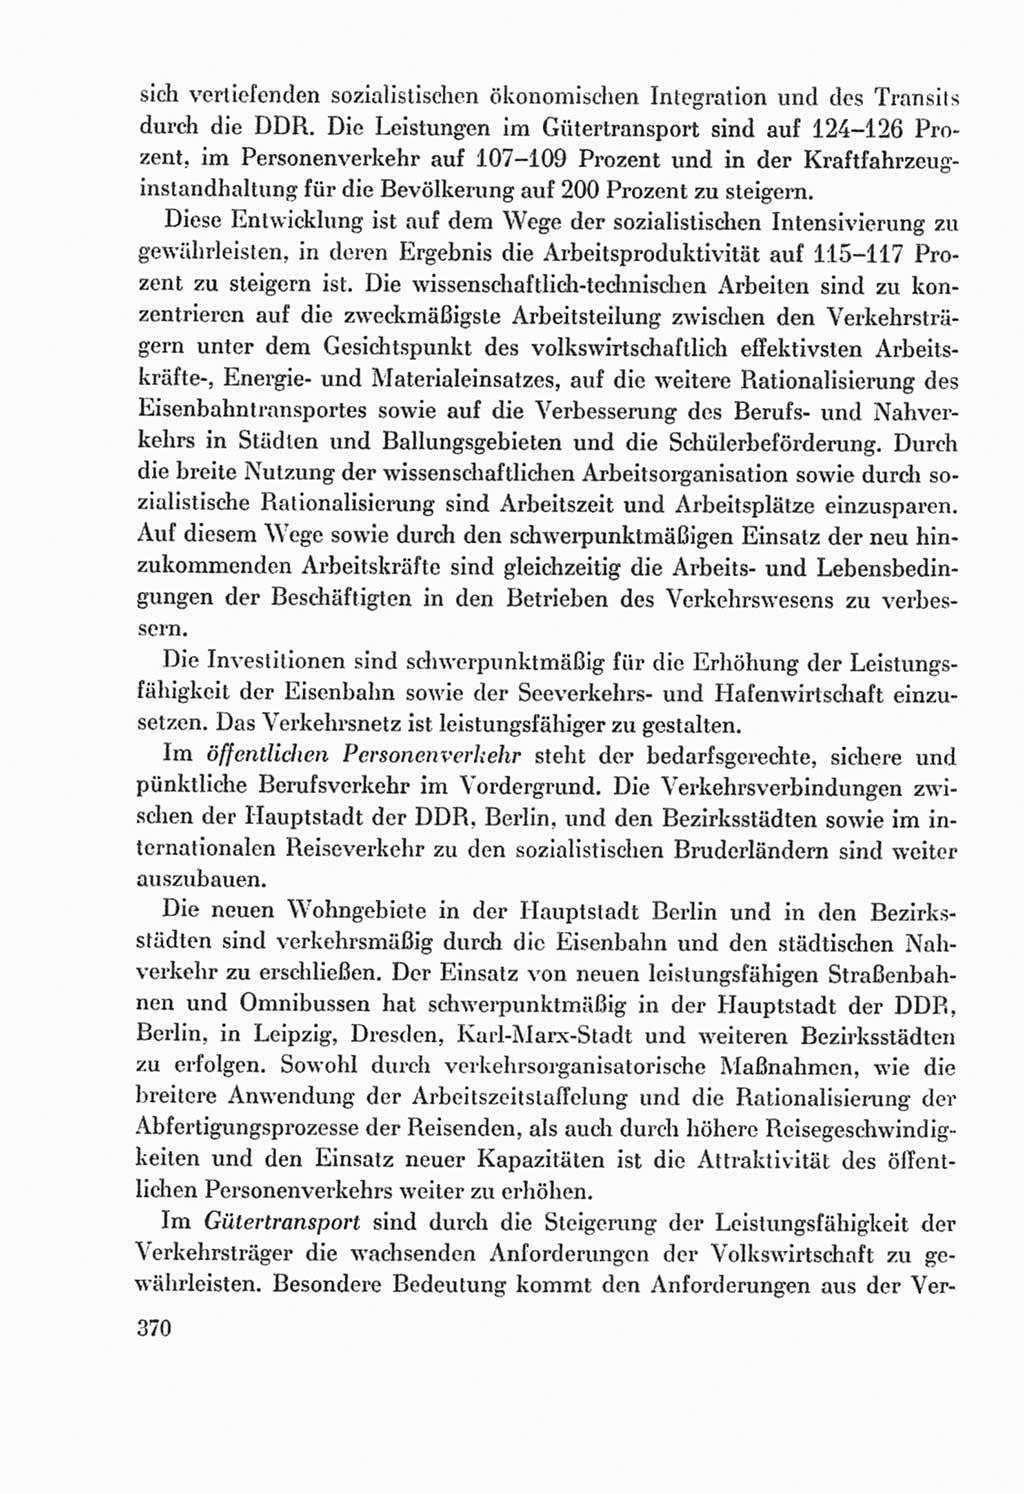 Protokoll der Verhandlungen des Ⅸ. Parteitages der Sozialistischen Einheitspartei Deutschlands (SED) [Deutsche Demokratische Republik (DDR)] 1976, Band 2, Seite 370 (Prot. Verh. Ⅸ. PT SED DDR 1976, Bd. 2, S. 370)